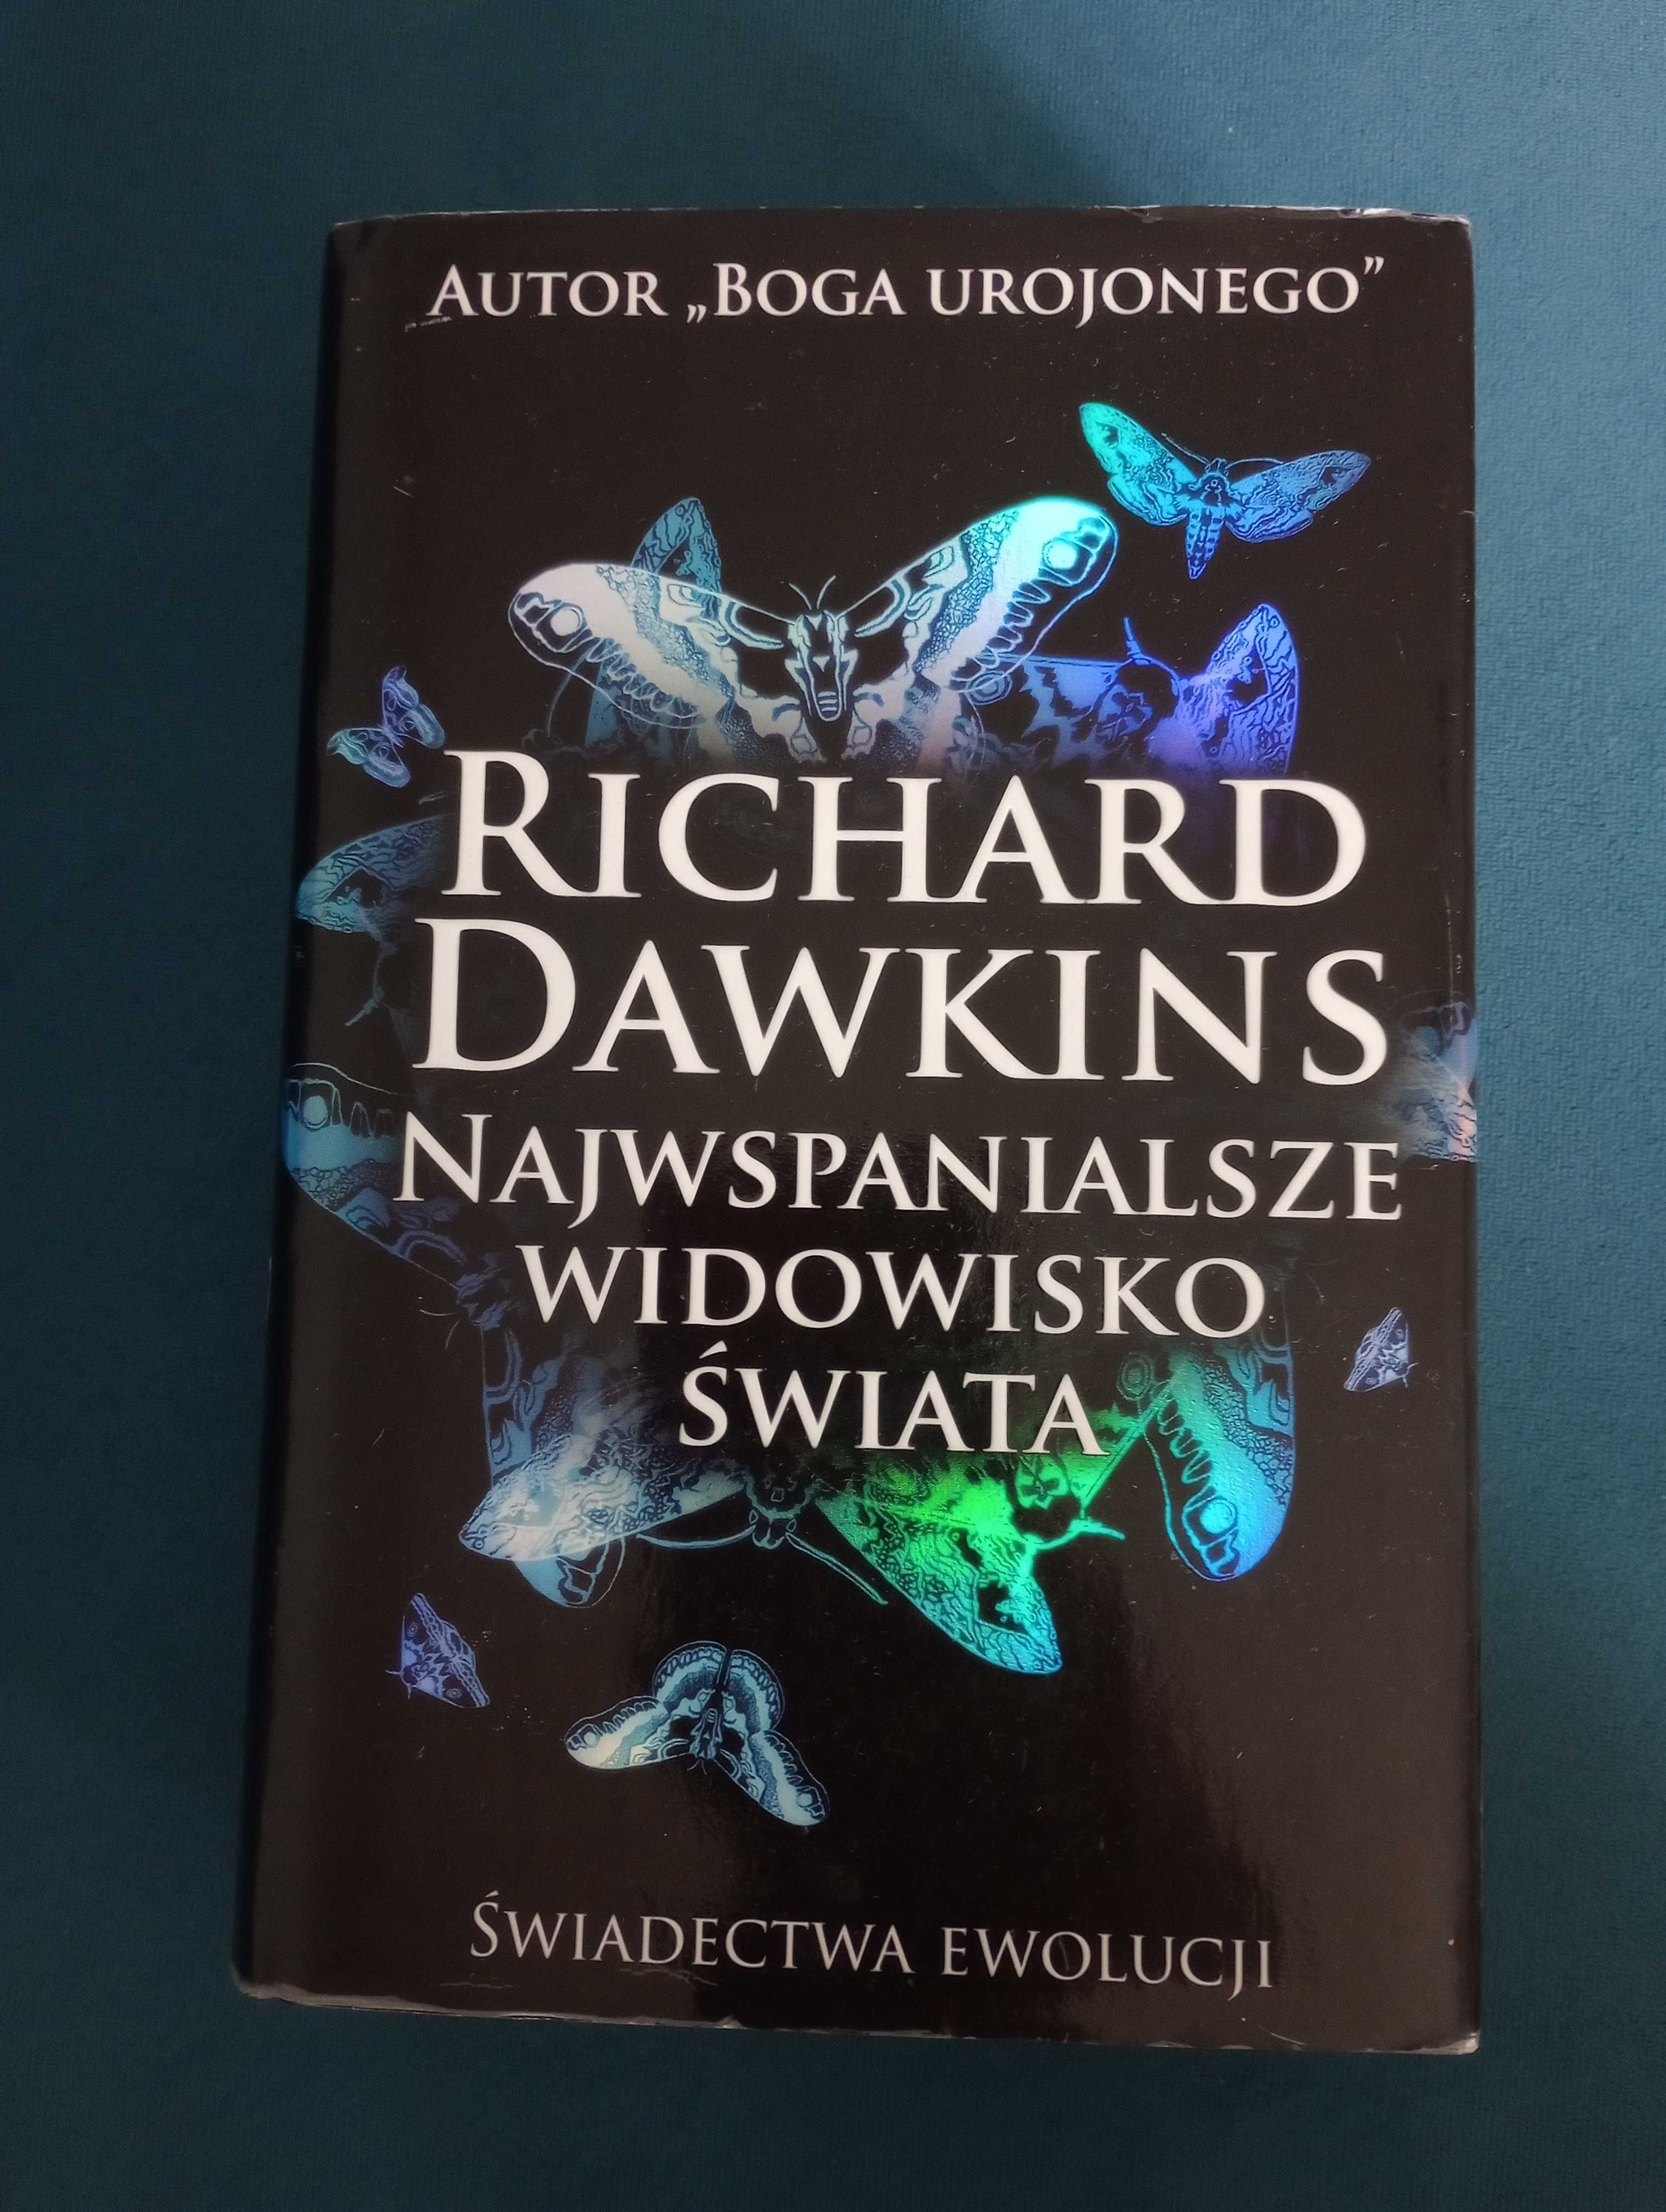 Richard Dawkins "Najwspanialsze Widowisko Świata"